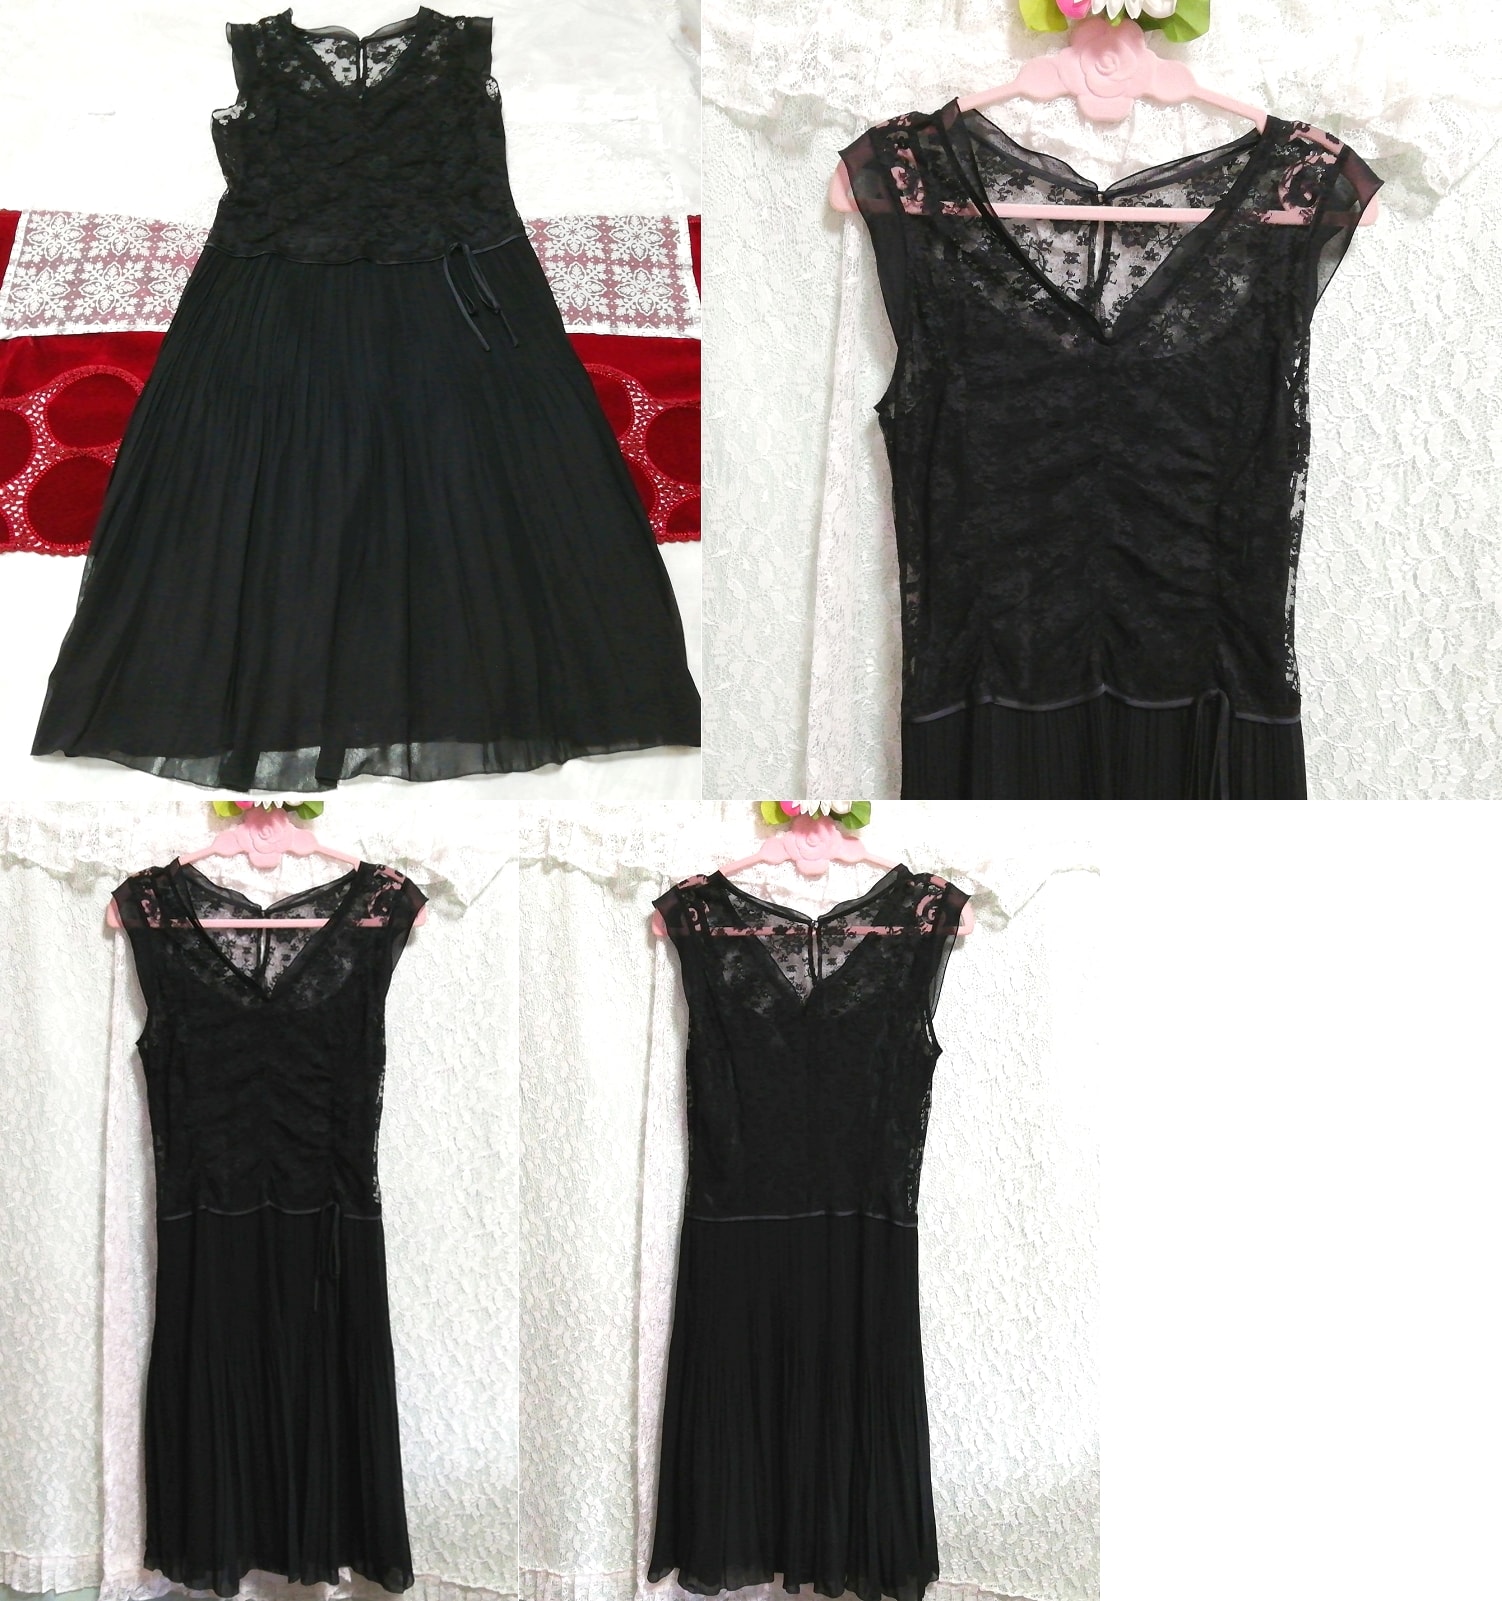 黑色蕾丝雪纺裙睡衣无袖连衣裙, 时尚, 女士时装, 睡衣